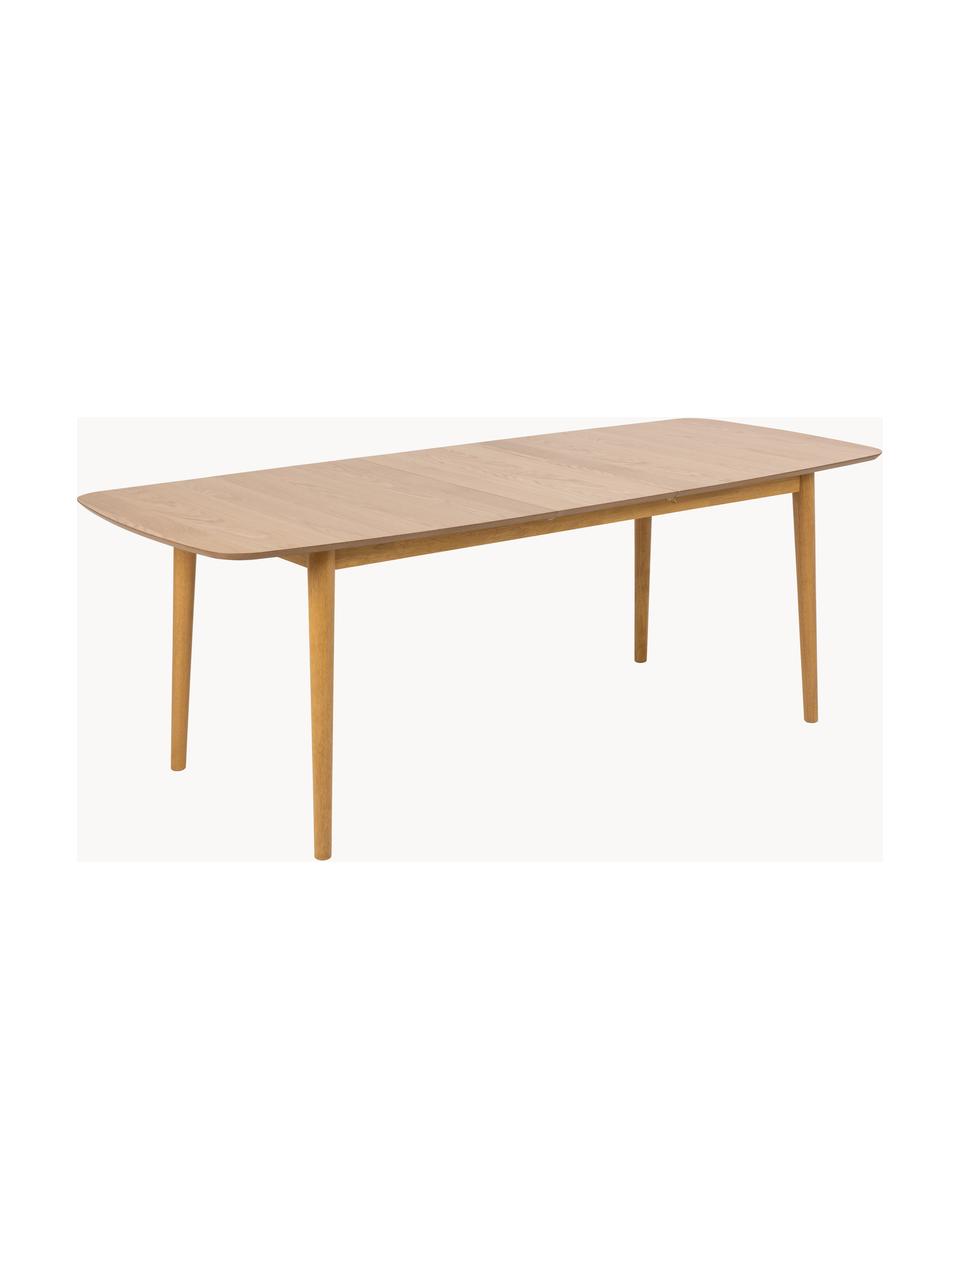 Table extensible Montreux, 180 - 220 x 90 cm, Bois de chêne, larg. 180 - 220 x prof. 90 cm